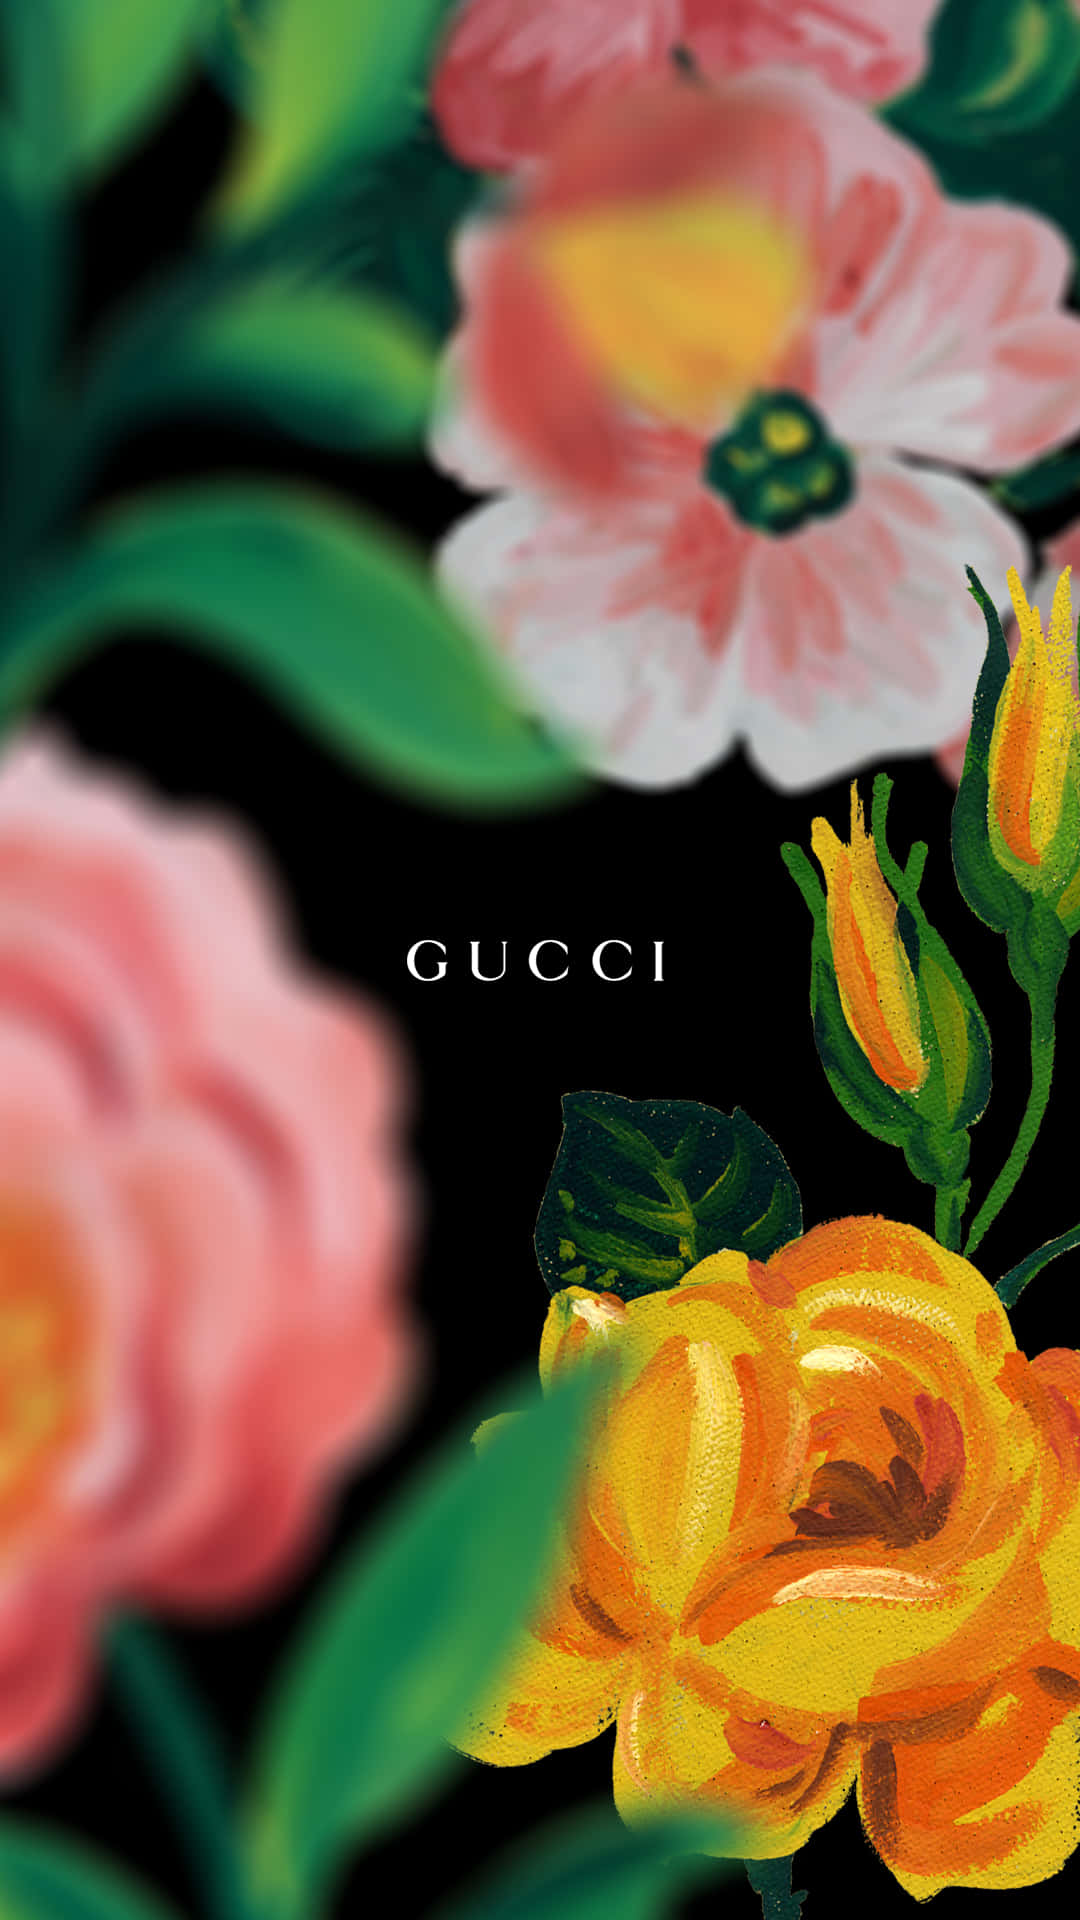 Gucci Grøn - At gøre et udsagn Wallpaper